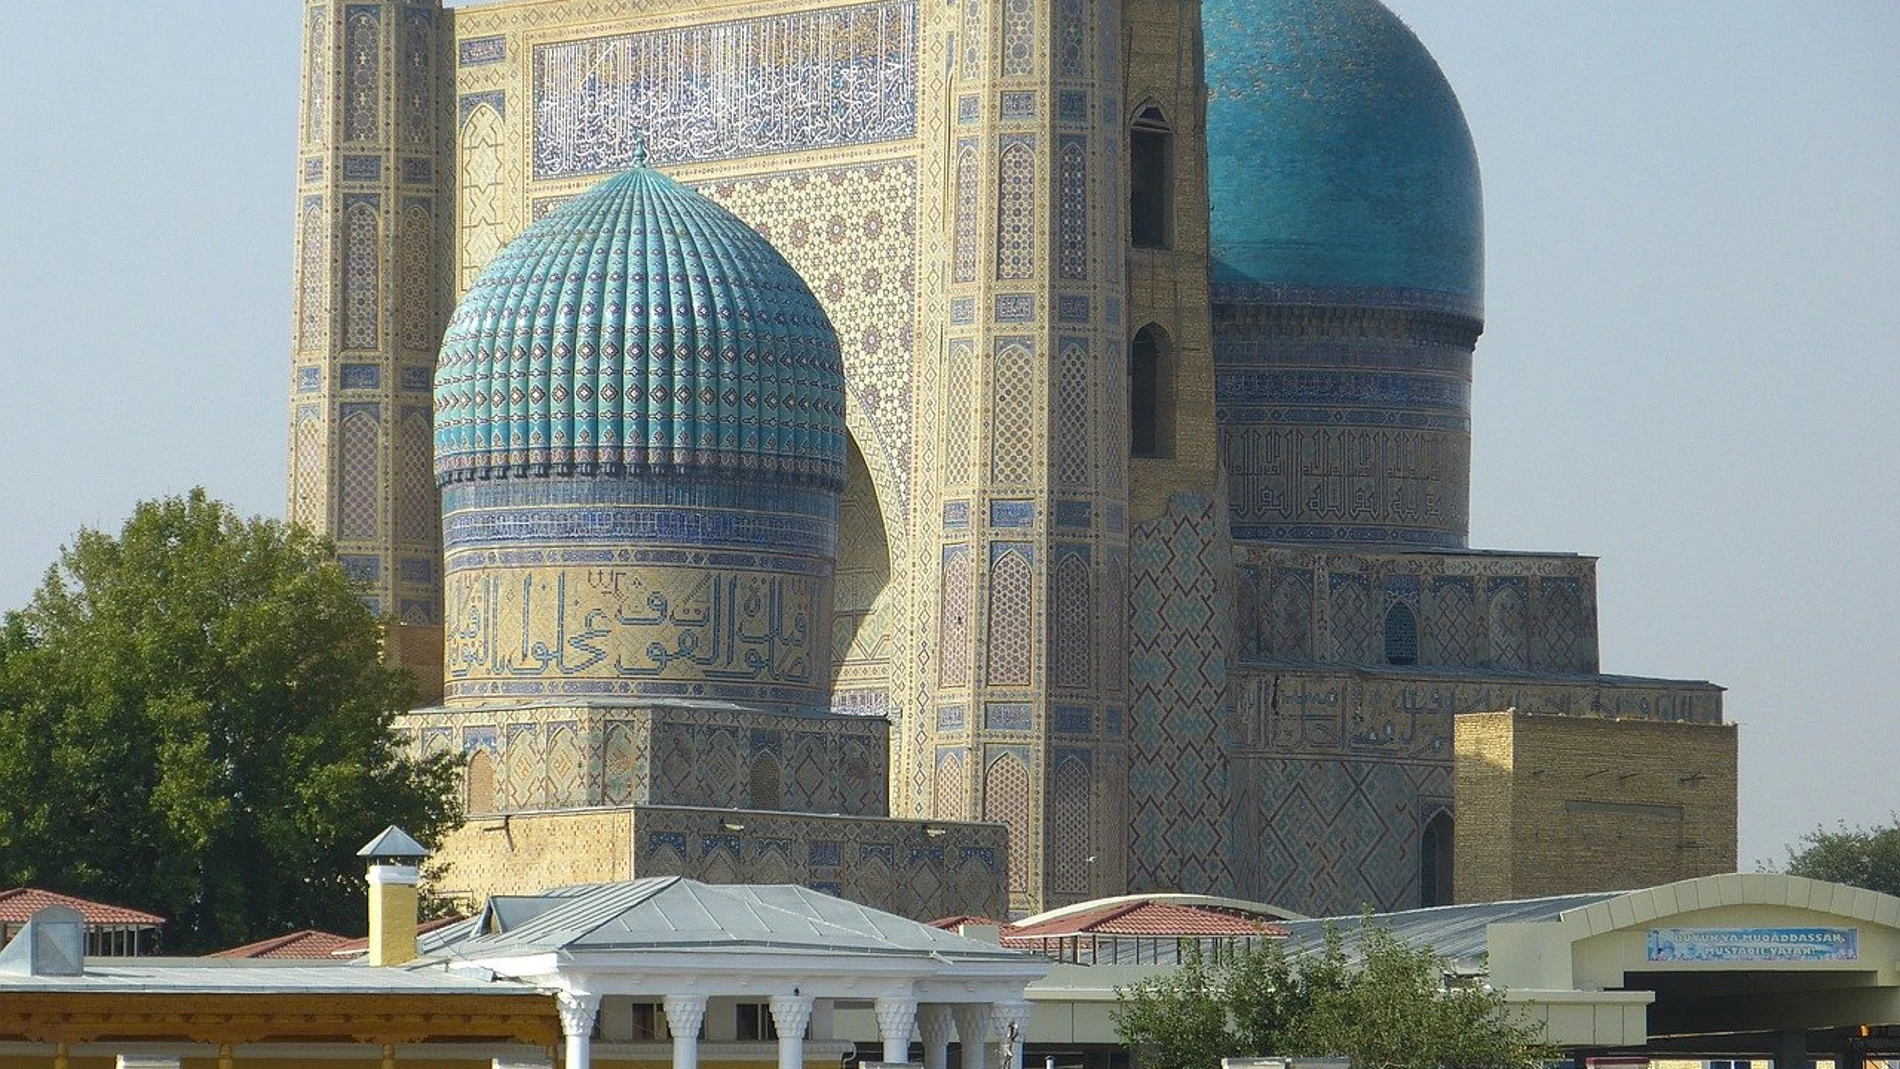 Vista de la impresionante mezquita de Bibi Khanum, que durante años fue la más alta de Asia.